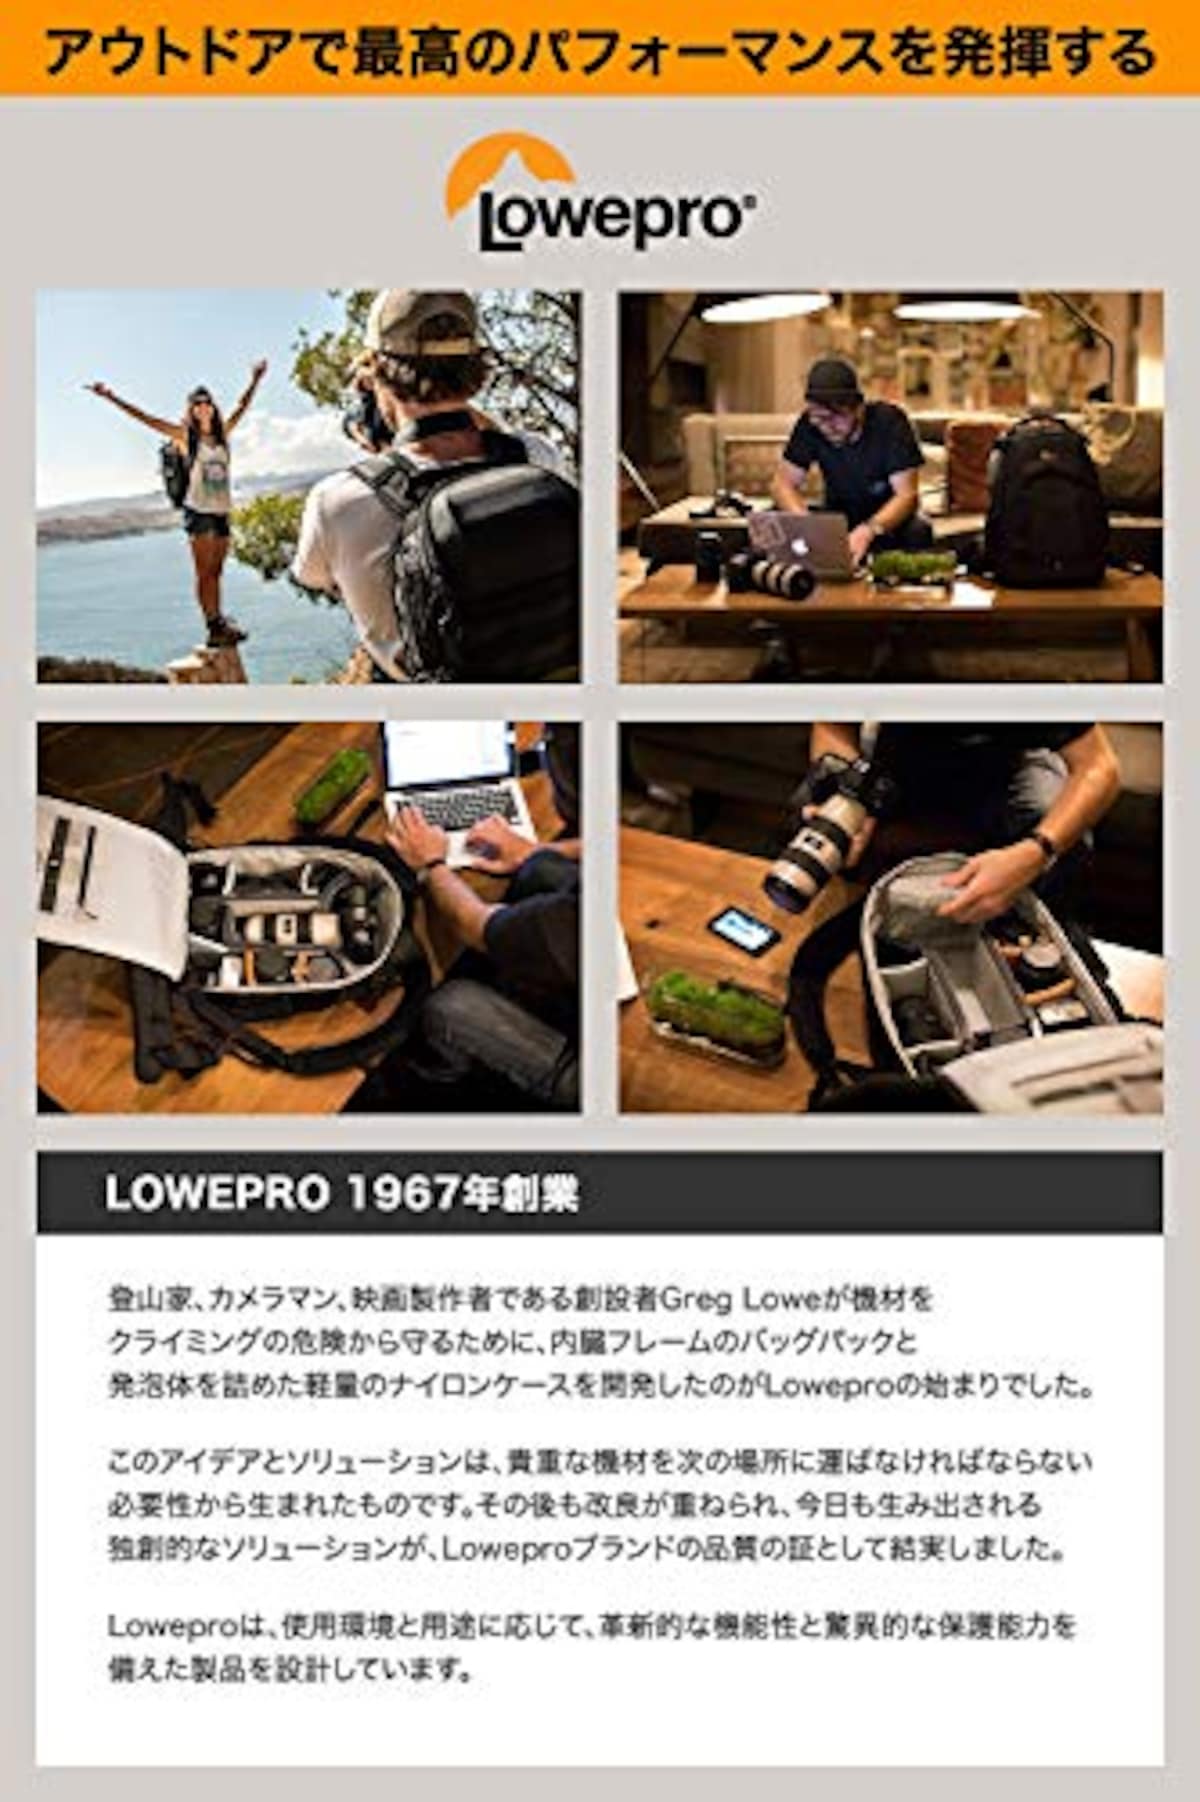  ロープロ(Lowepro) スリングショット SL250AW III バックパック ブラック 13.5L 10インチタブレット収納可能 レインカバー付属 LP37335-PWW画像7 